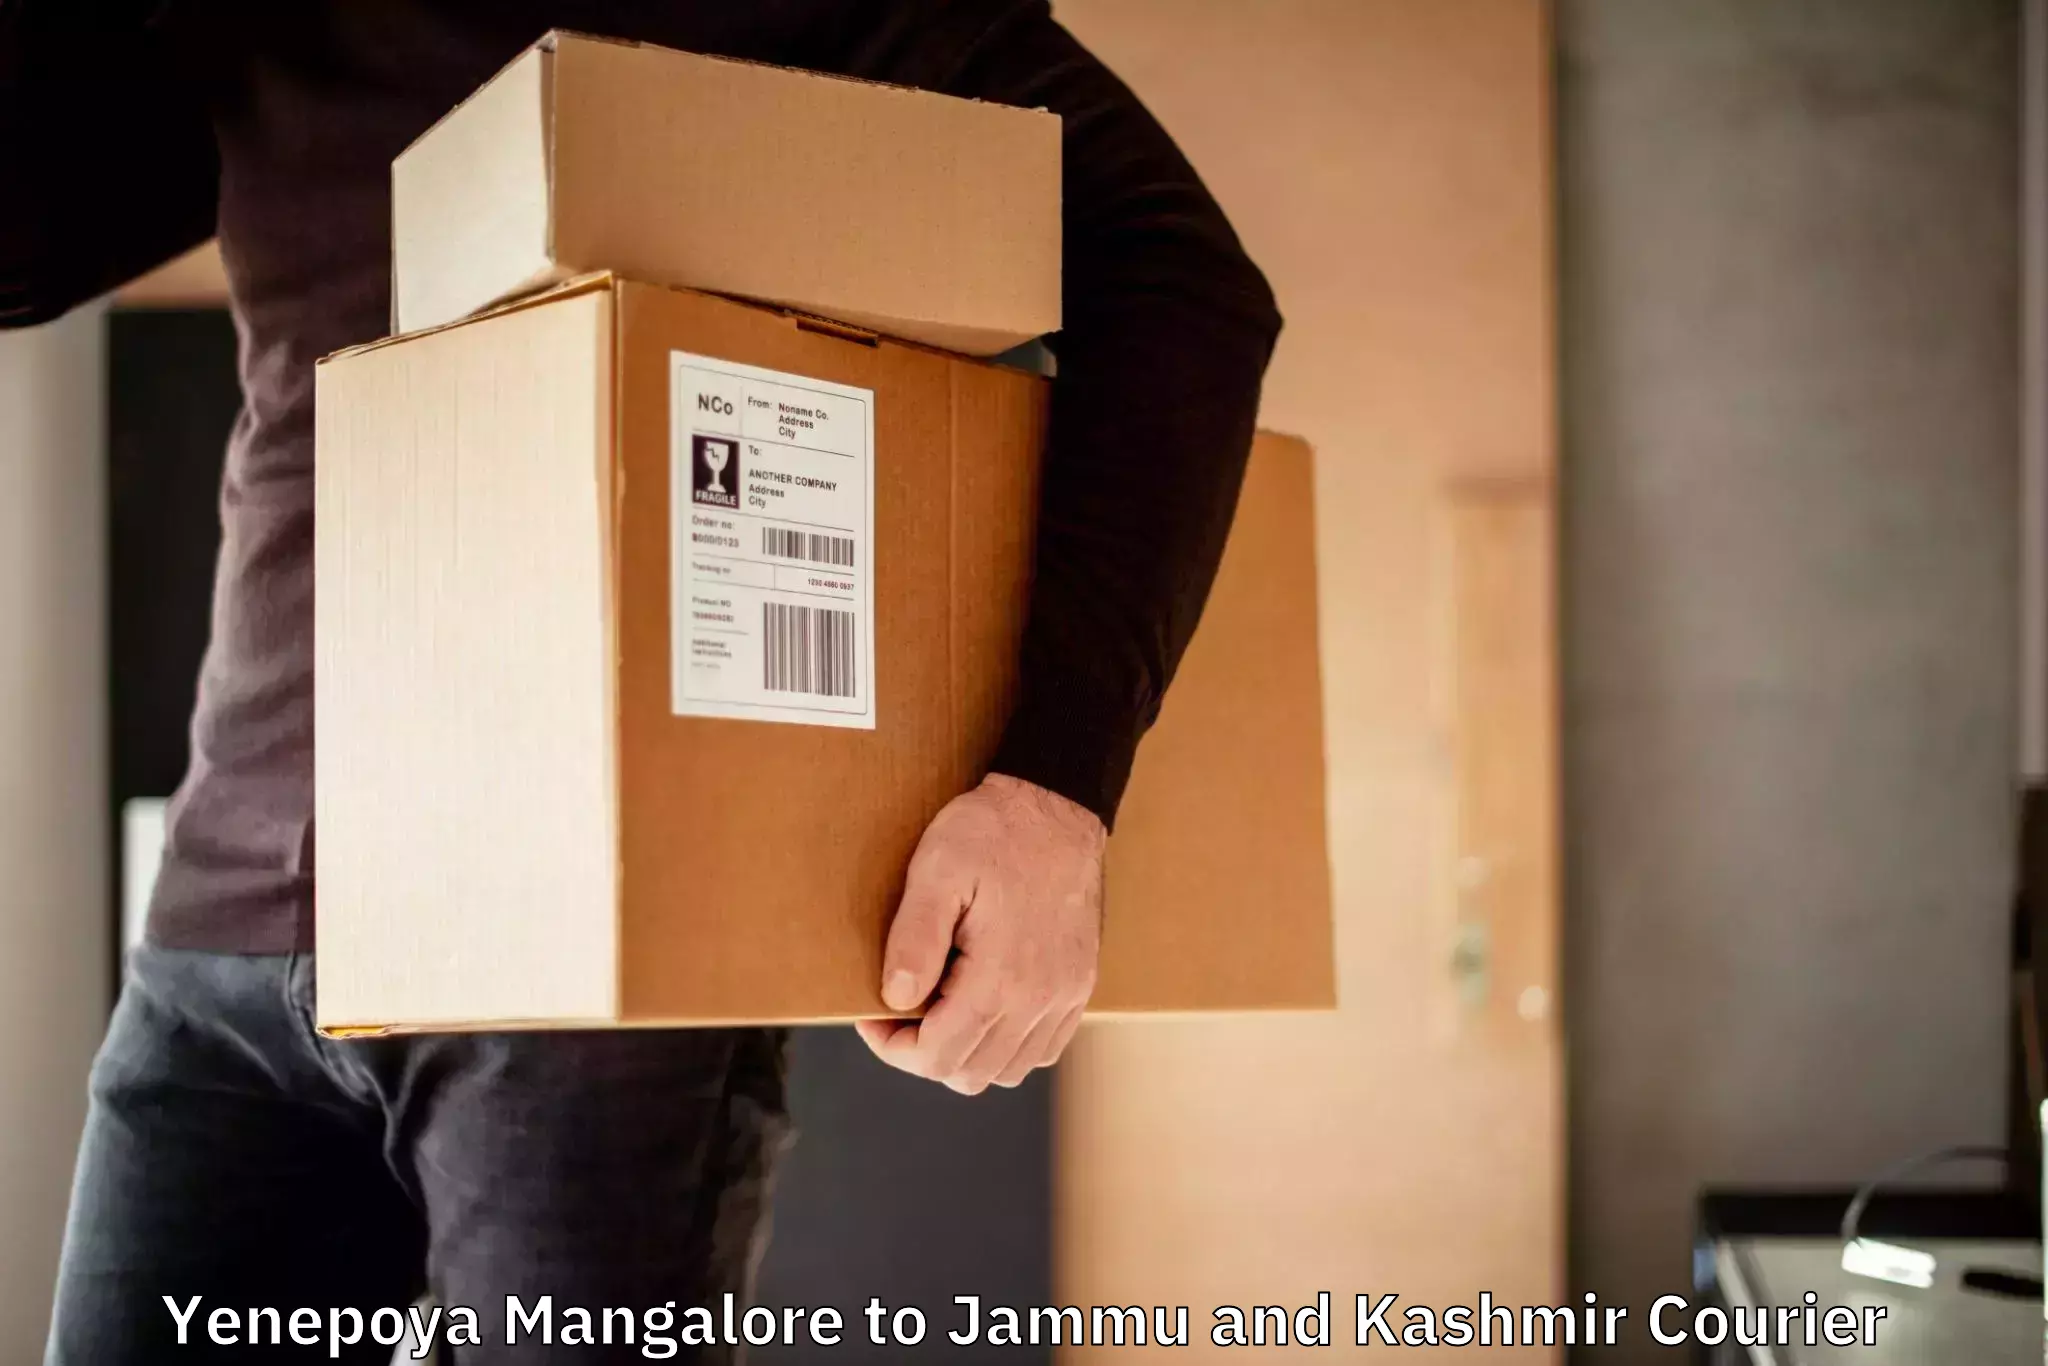 Nationwide shipping coverage Yenepoya Mangalore to University of Kashmir Srinagar